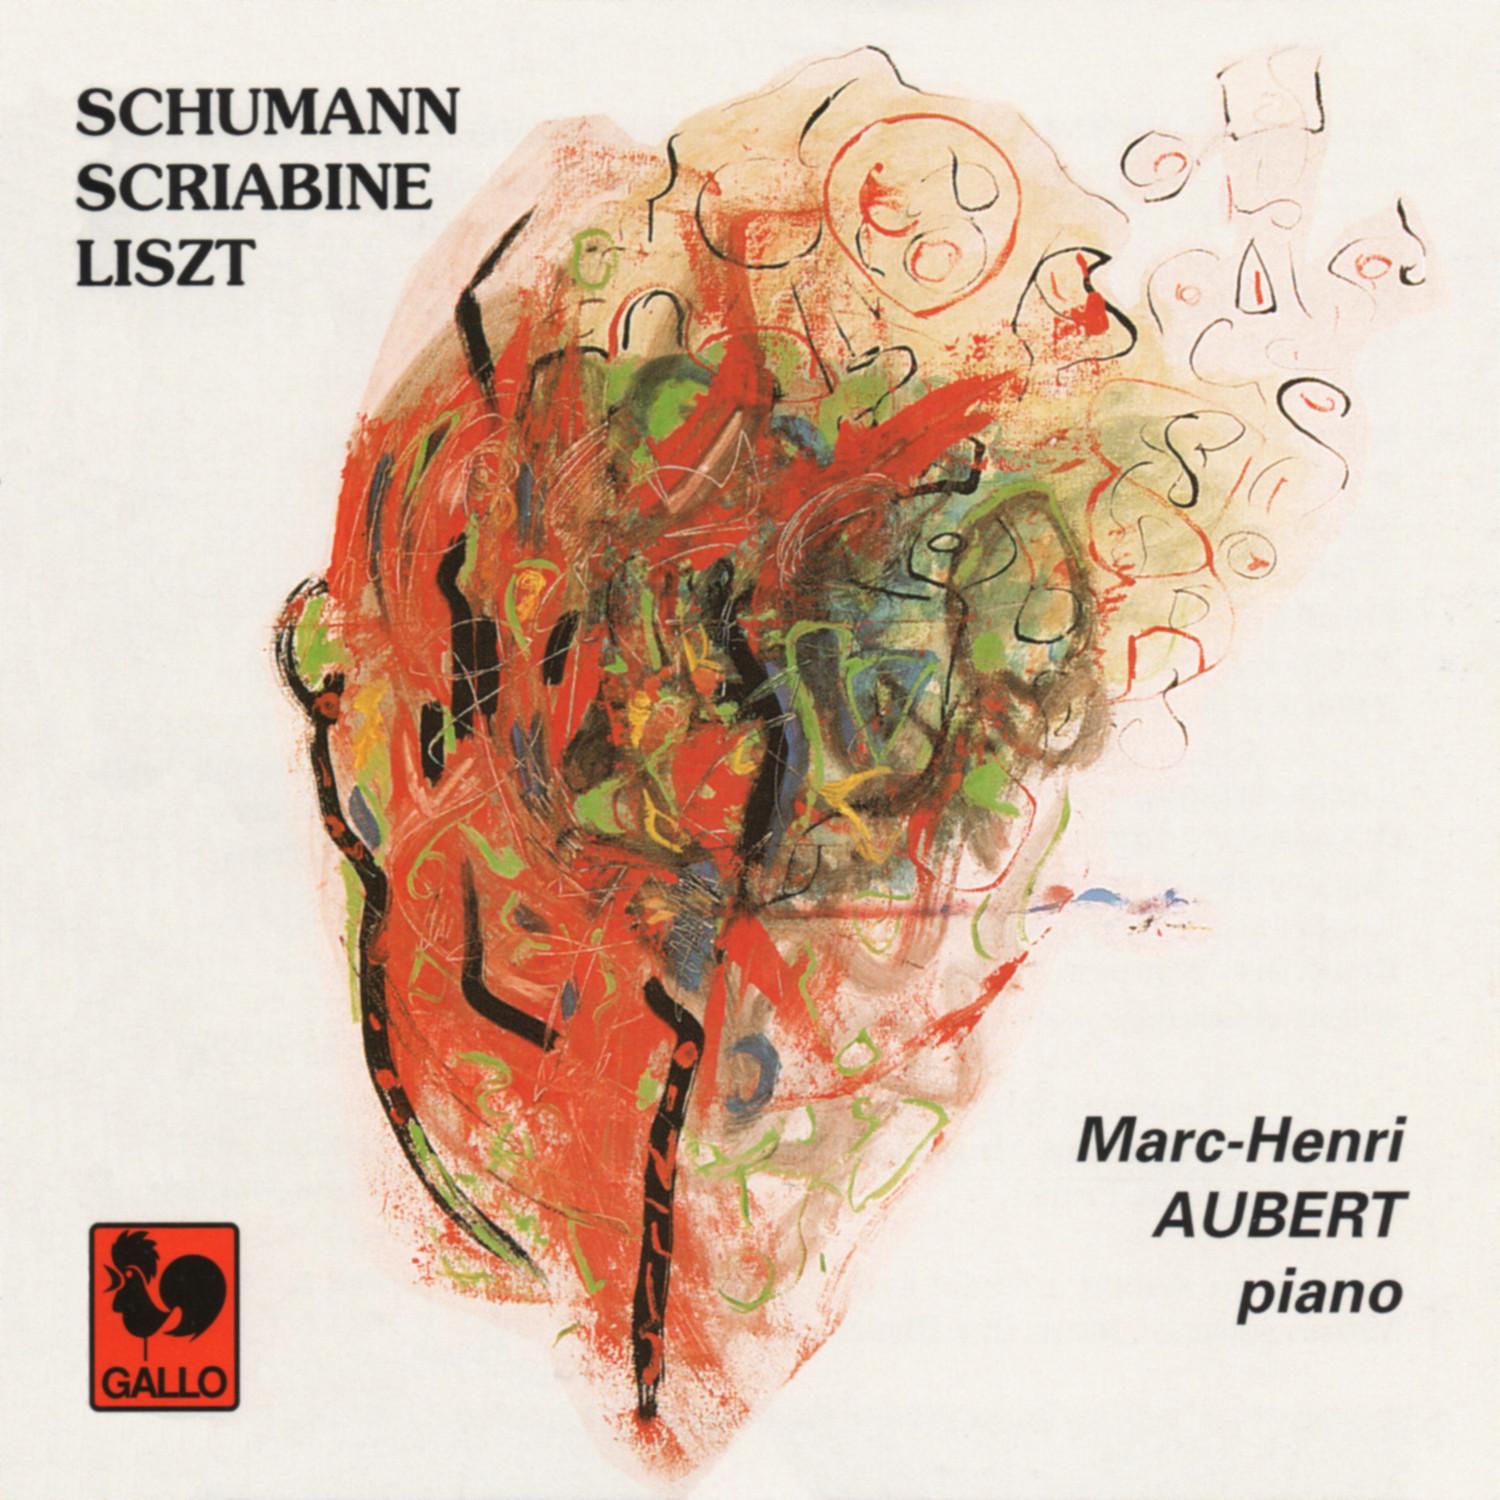 Schumann: Fantasiestü cke, Op. 12  Liszt: Valle e d' Obermann S. 160, No. 6  Scriabin: Sonata No. 5, Op. 53